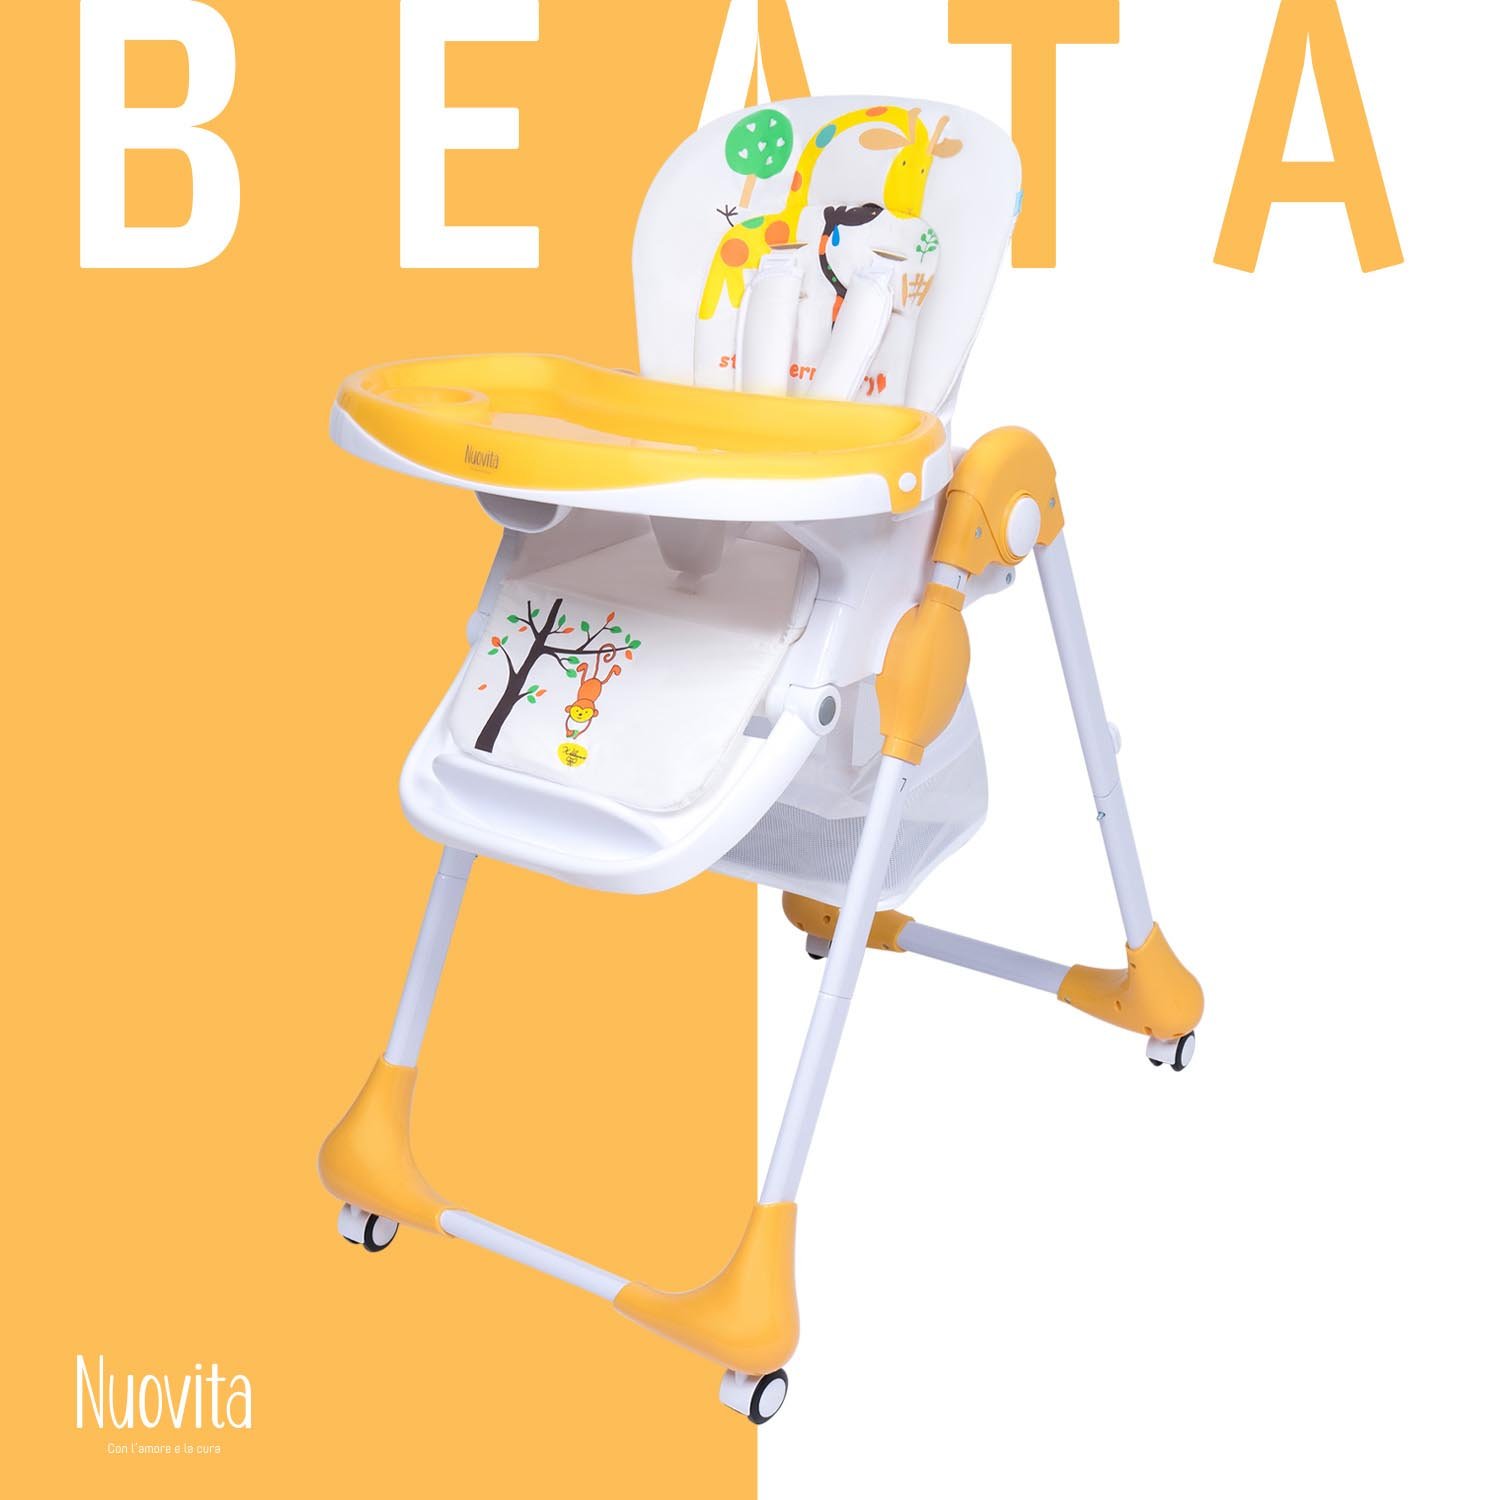 Стульчик для кормления Nuovita Beata (Animale / Животные) стульчик для кормления nuovita beata